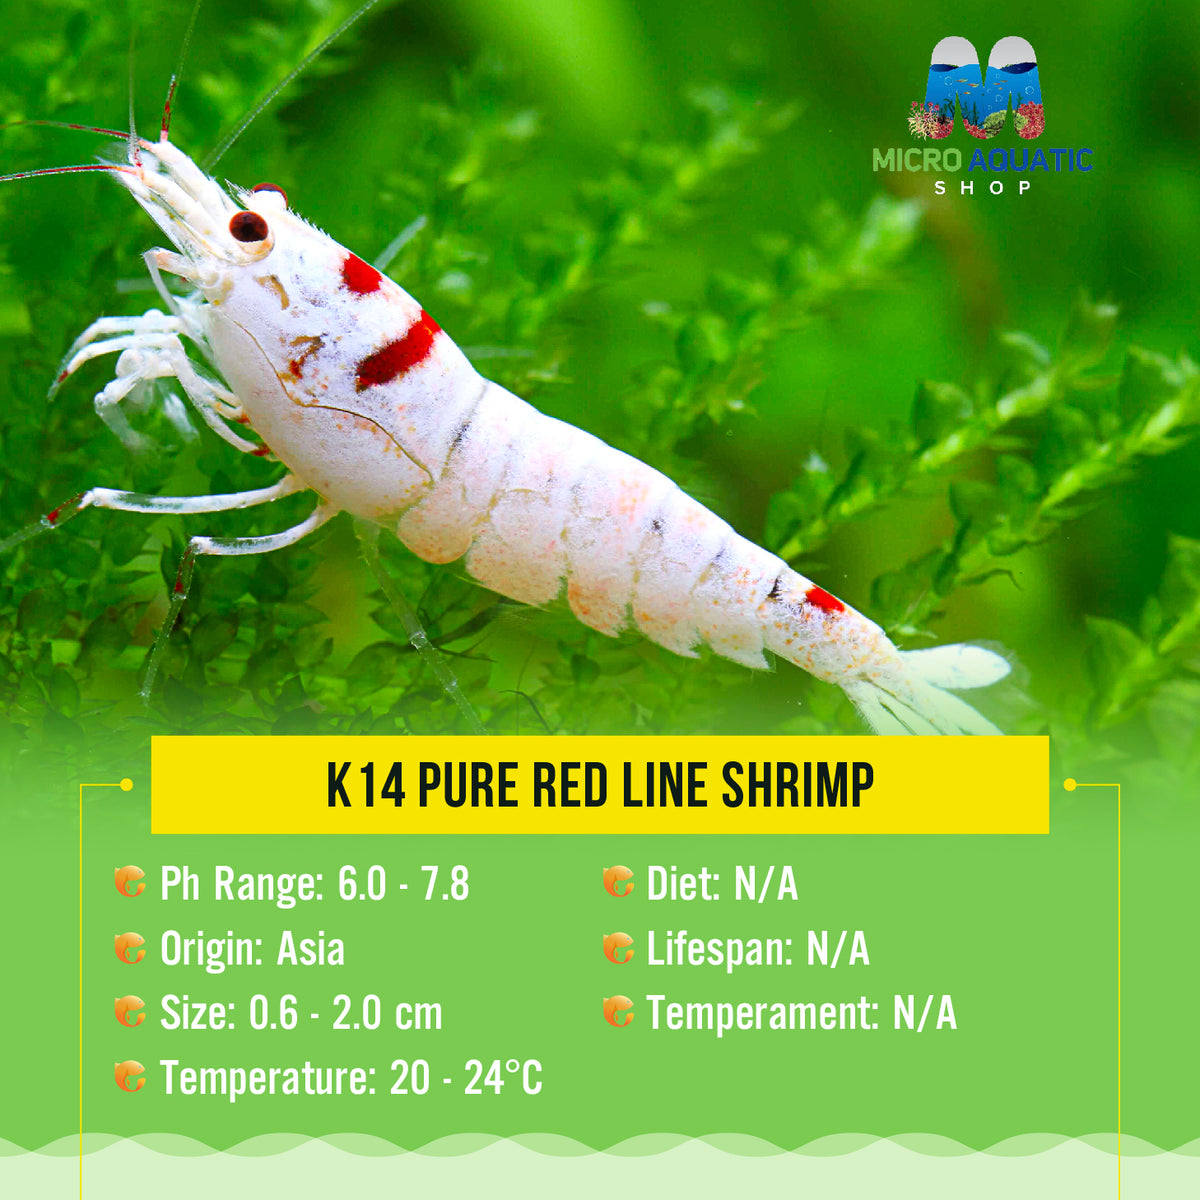 Buy 5 get 2 K14 Pure Red Line Shrimp